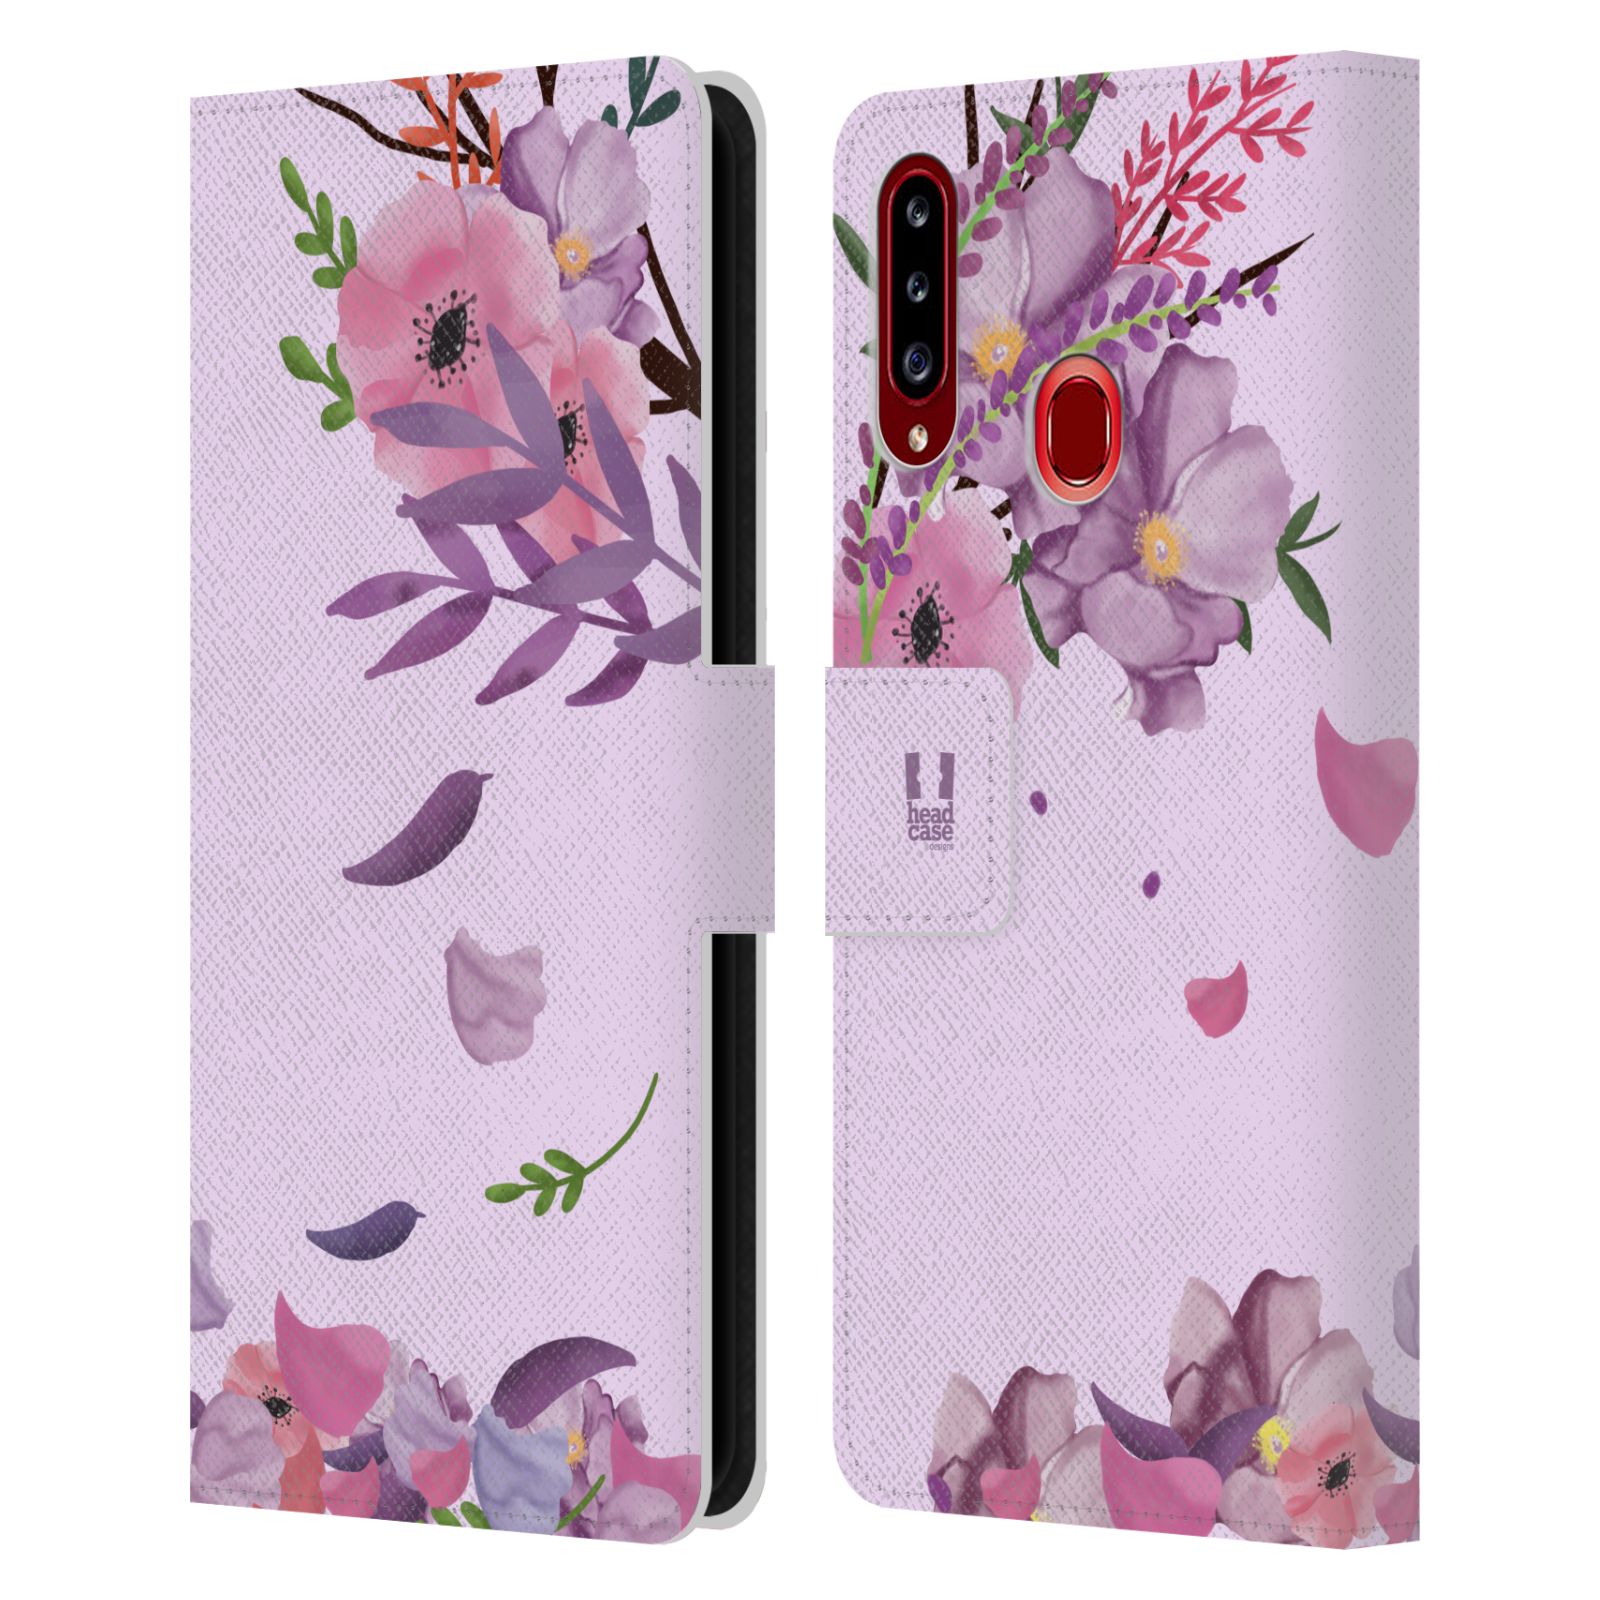 Pouzdro na mobil Samsung Galaxy A20S - HEAD CASE - Rozkvetlé růže a listy růžová